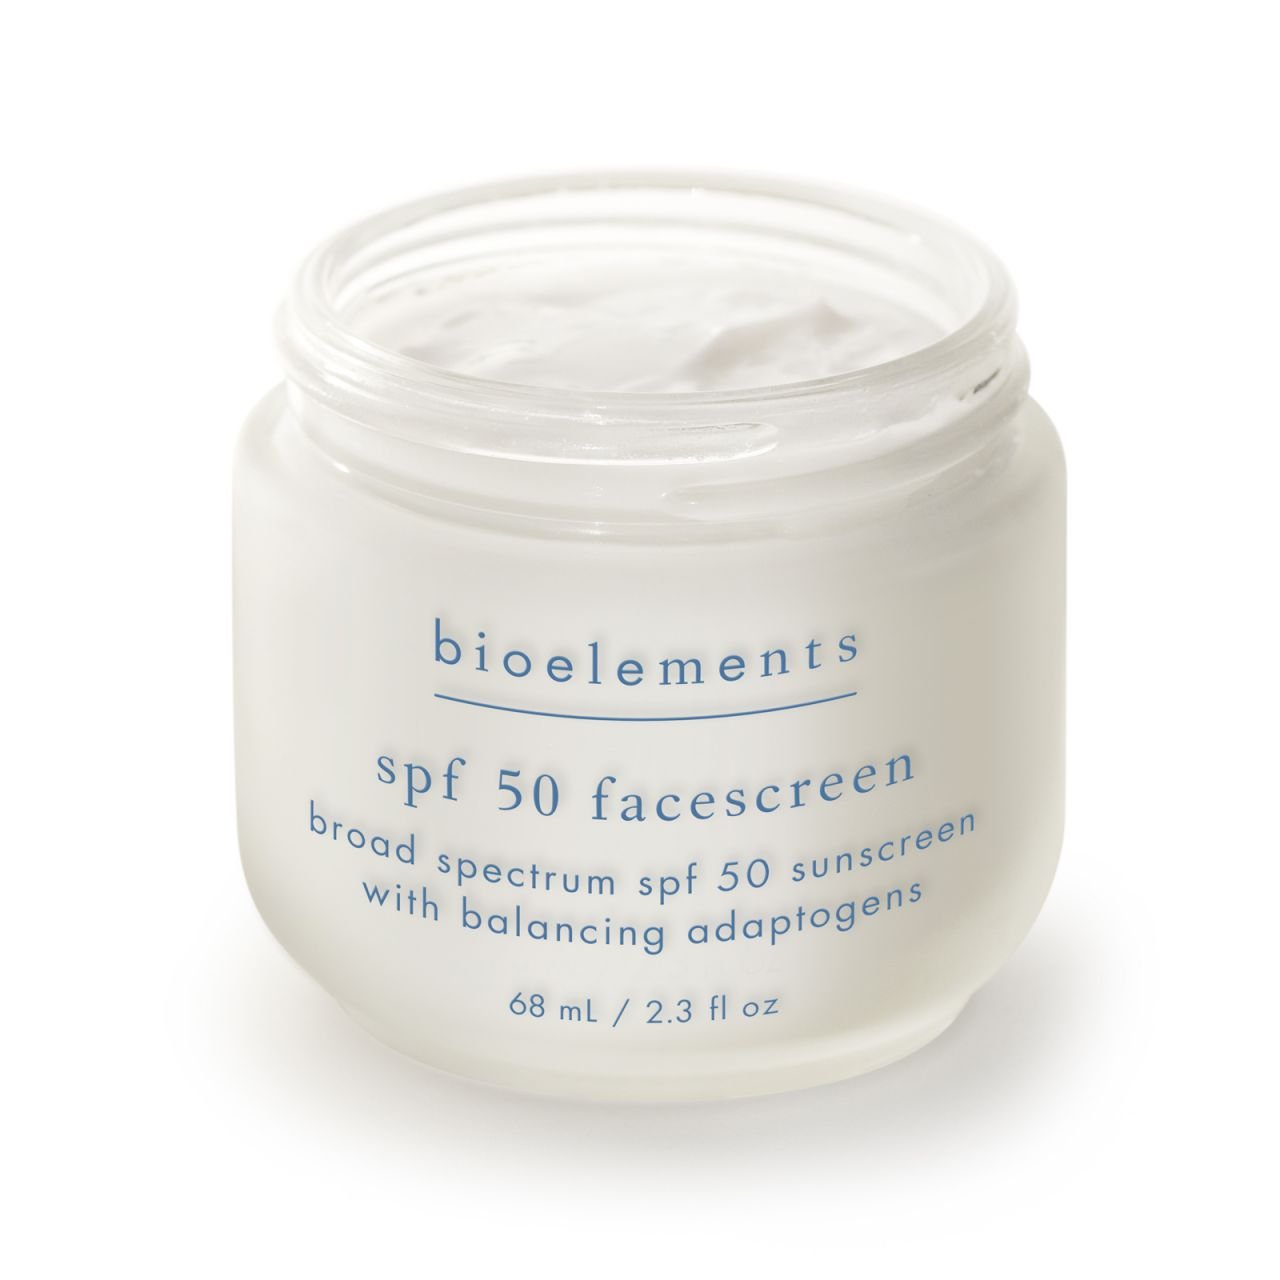 Солнцезащитный крем для кожи SPF 50 SPF 50 FaceScreen Bioelements, 68мл